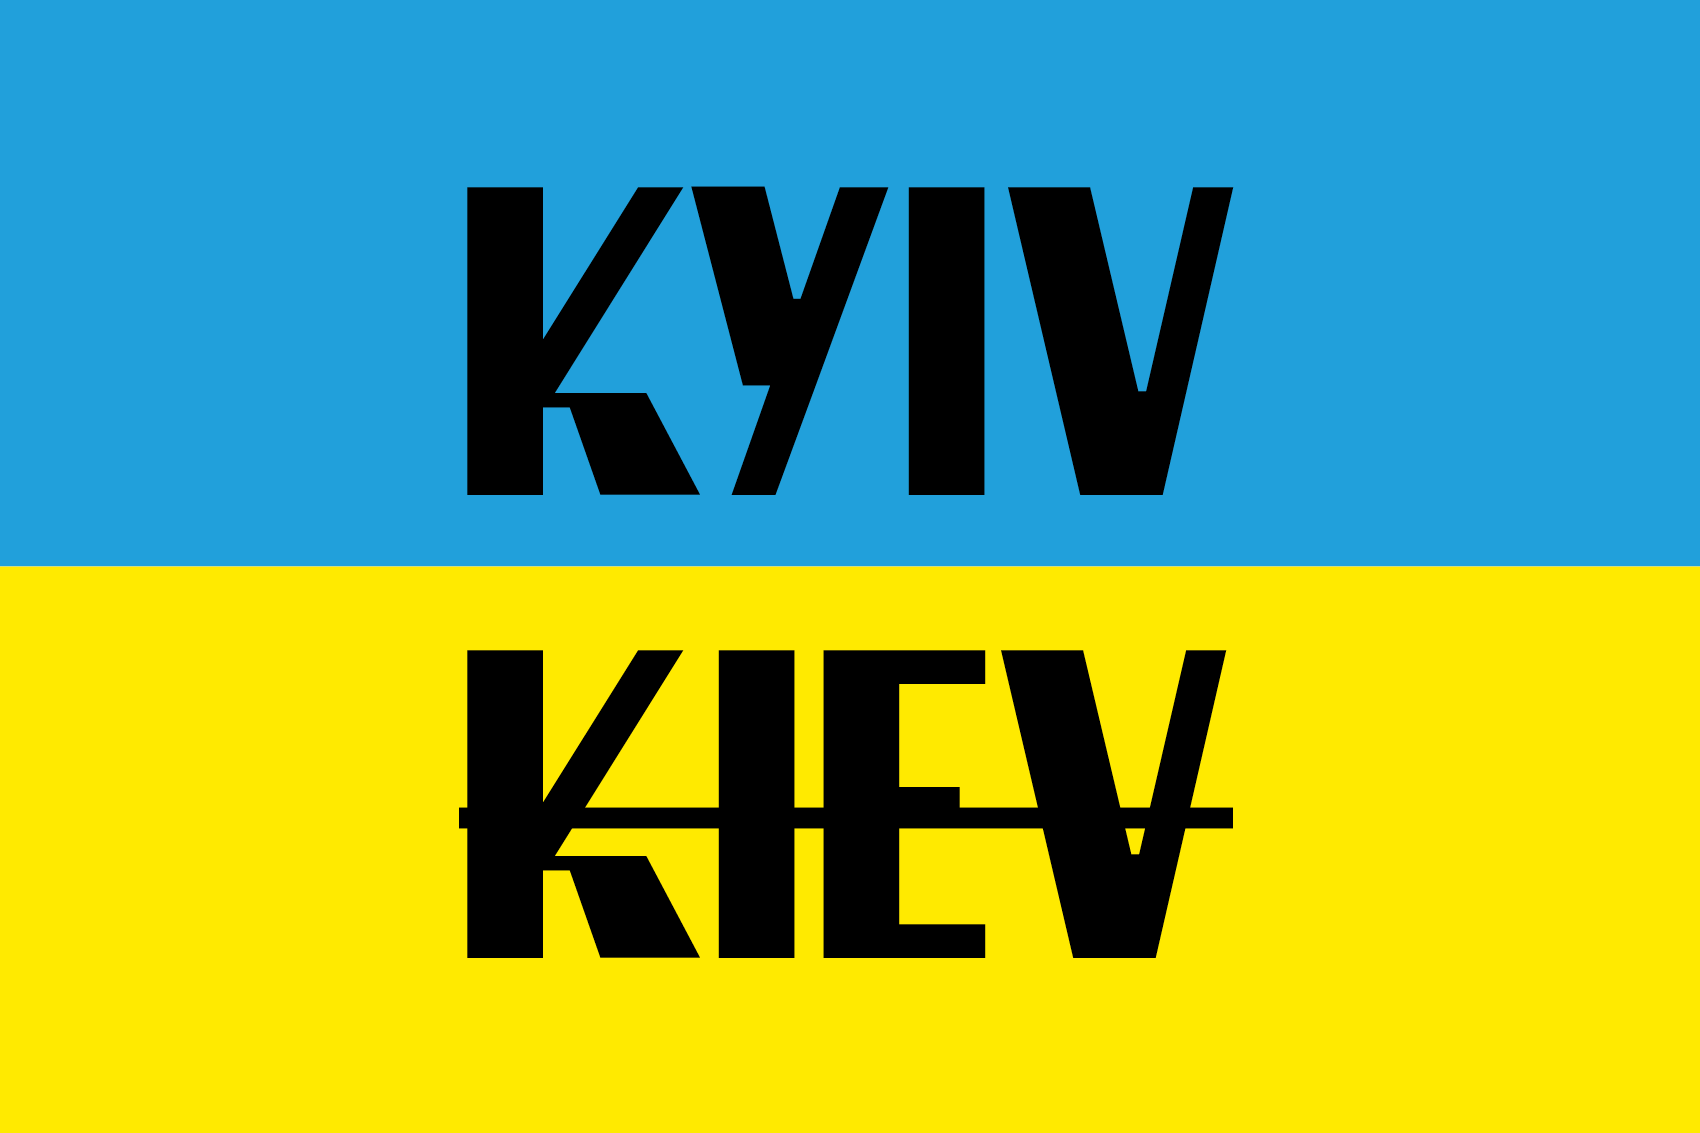 In Solidarity with Ukraine